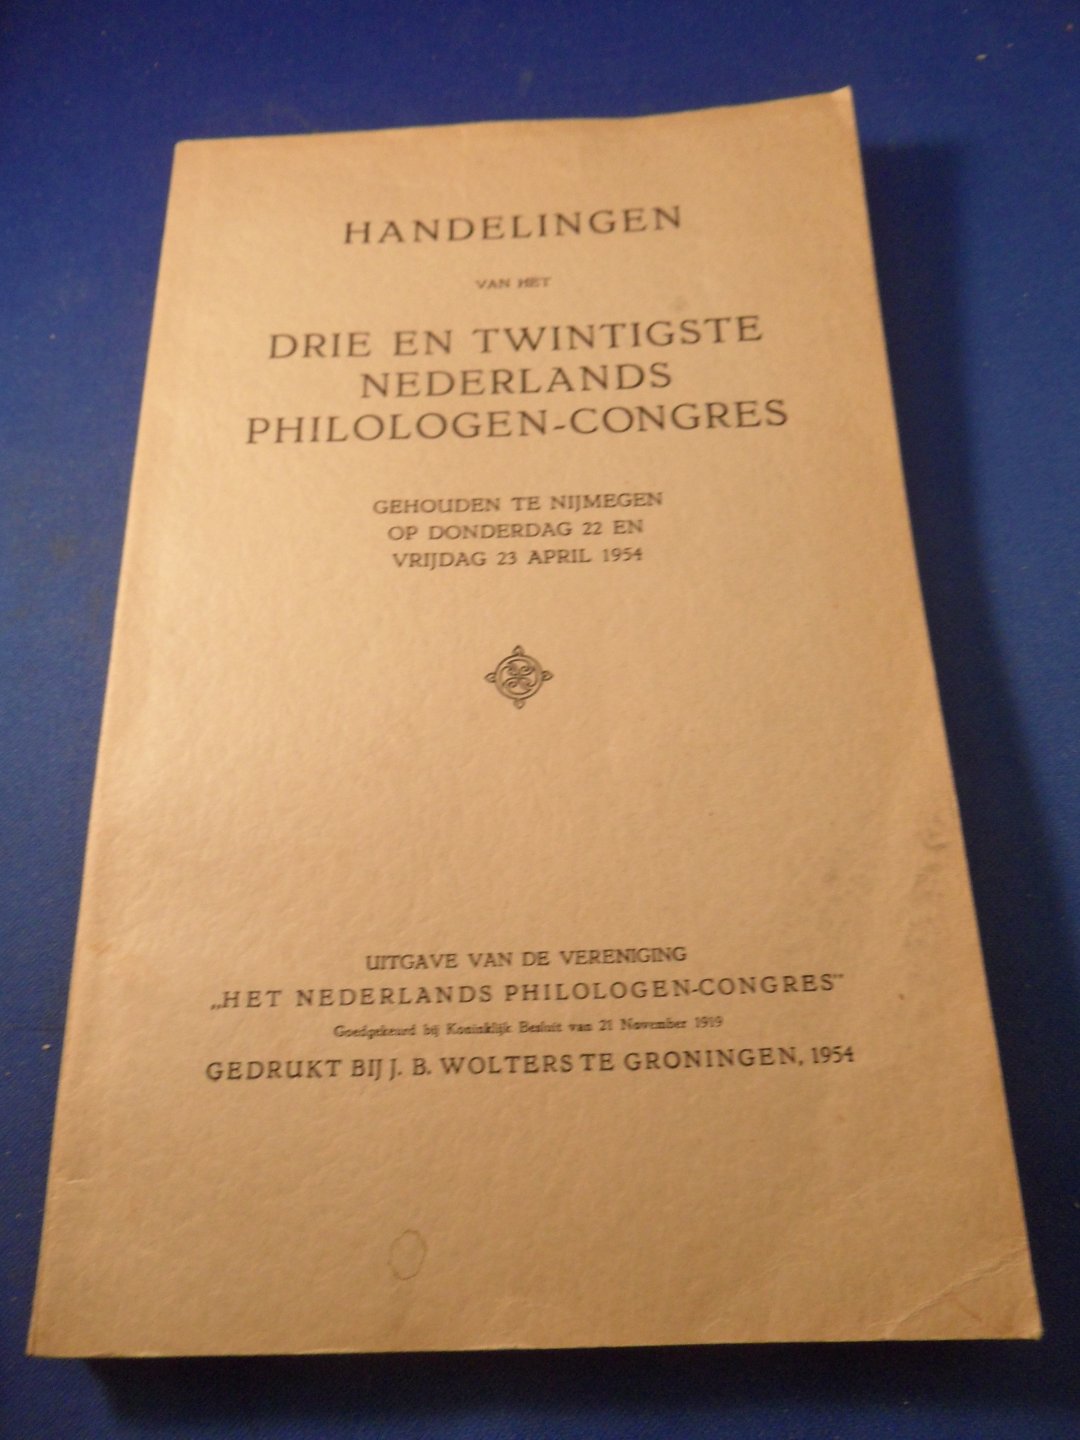  - Handelingen van het drie en twintigste Nederlands Filologencongres